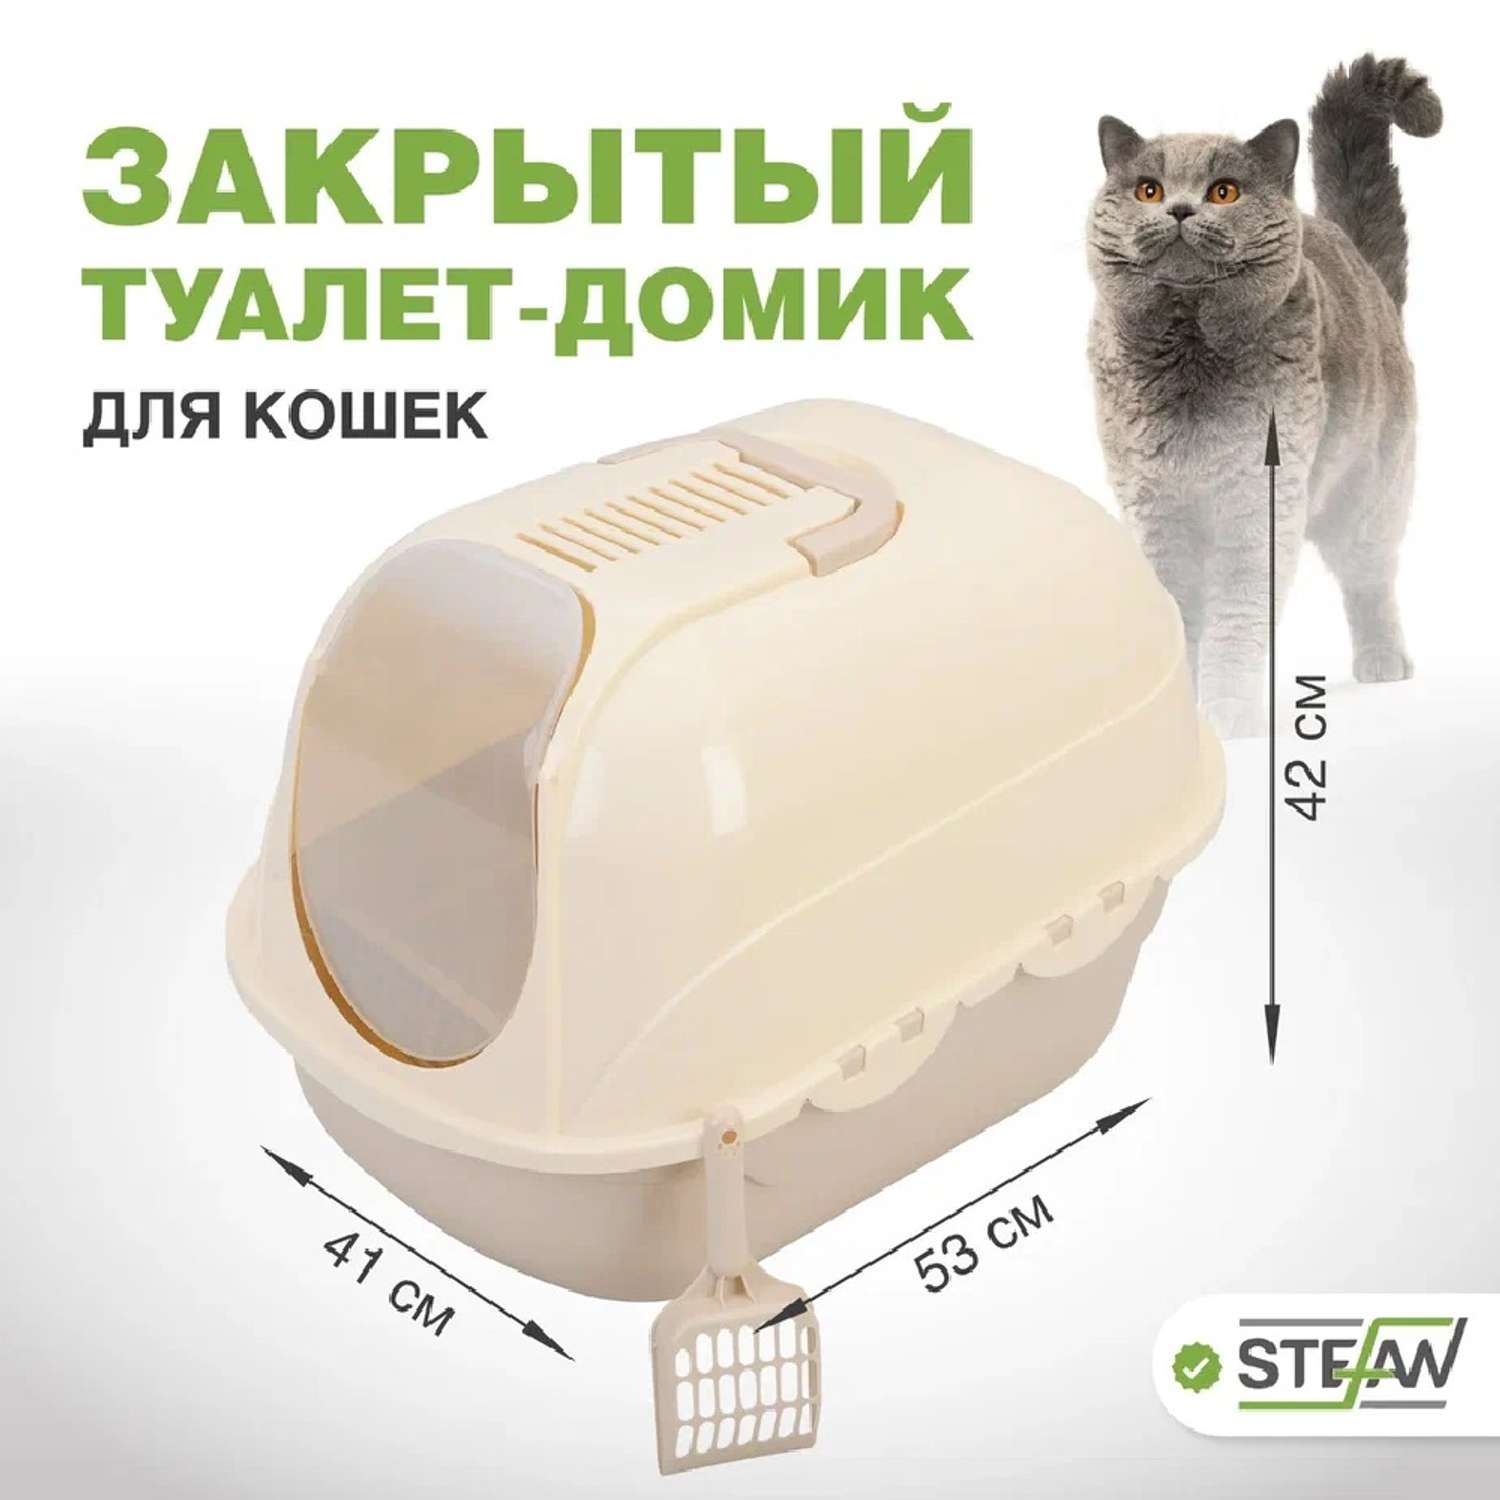 Туалет домик лоток для кошек Stefan закрытый с совком 53х41х42 см бежевый - фото 1